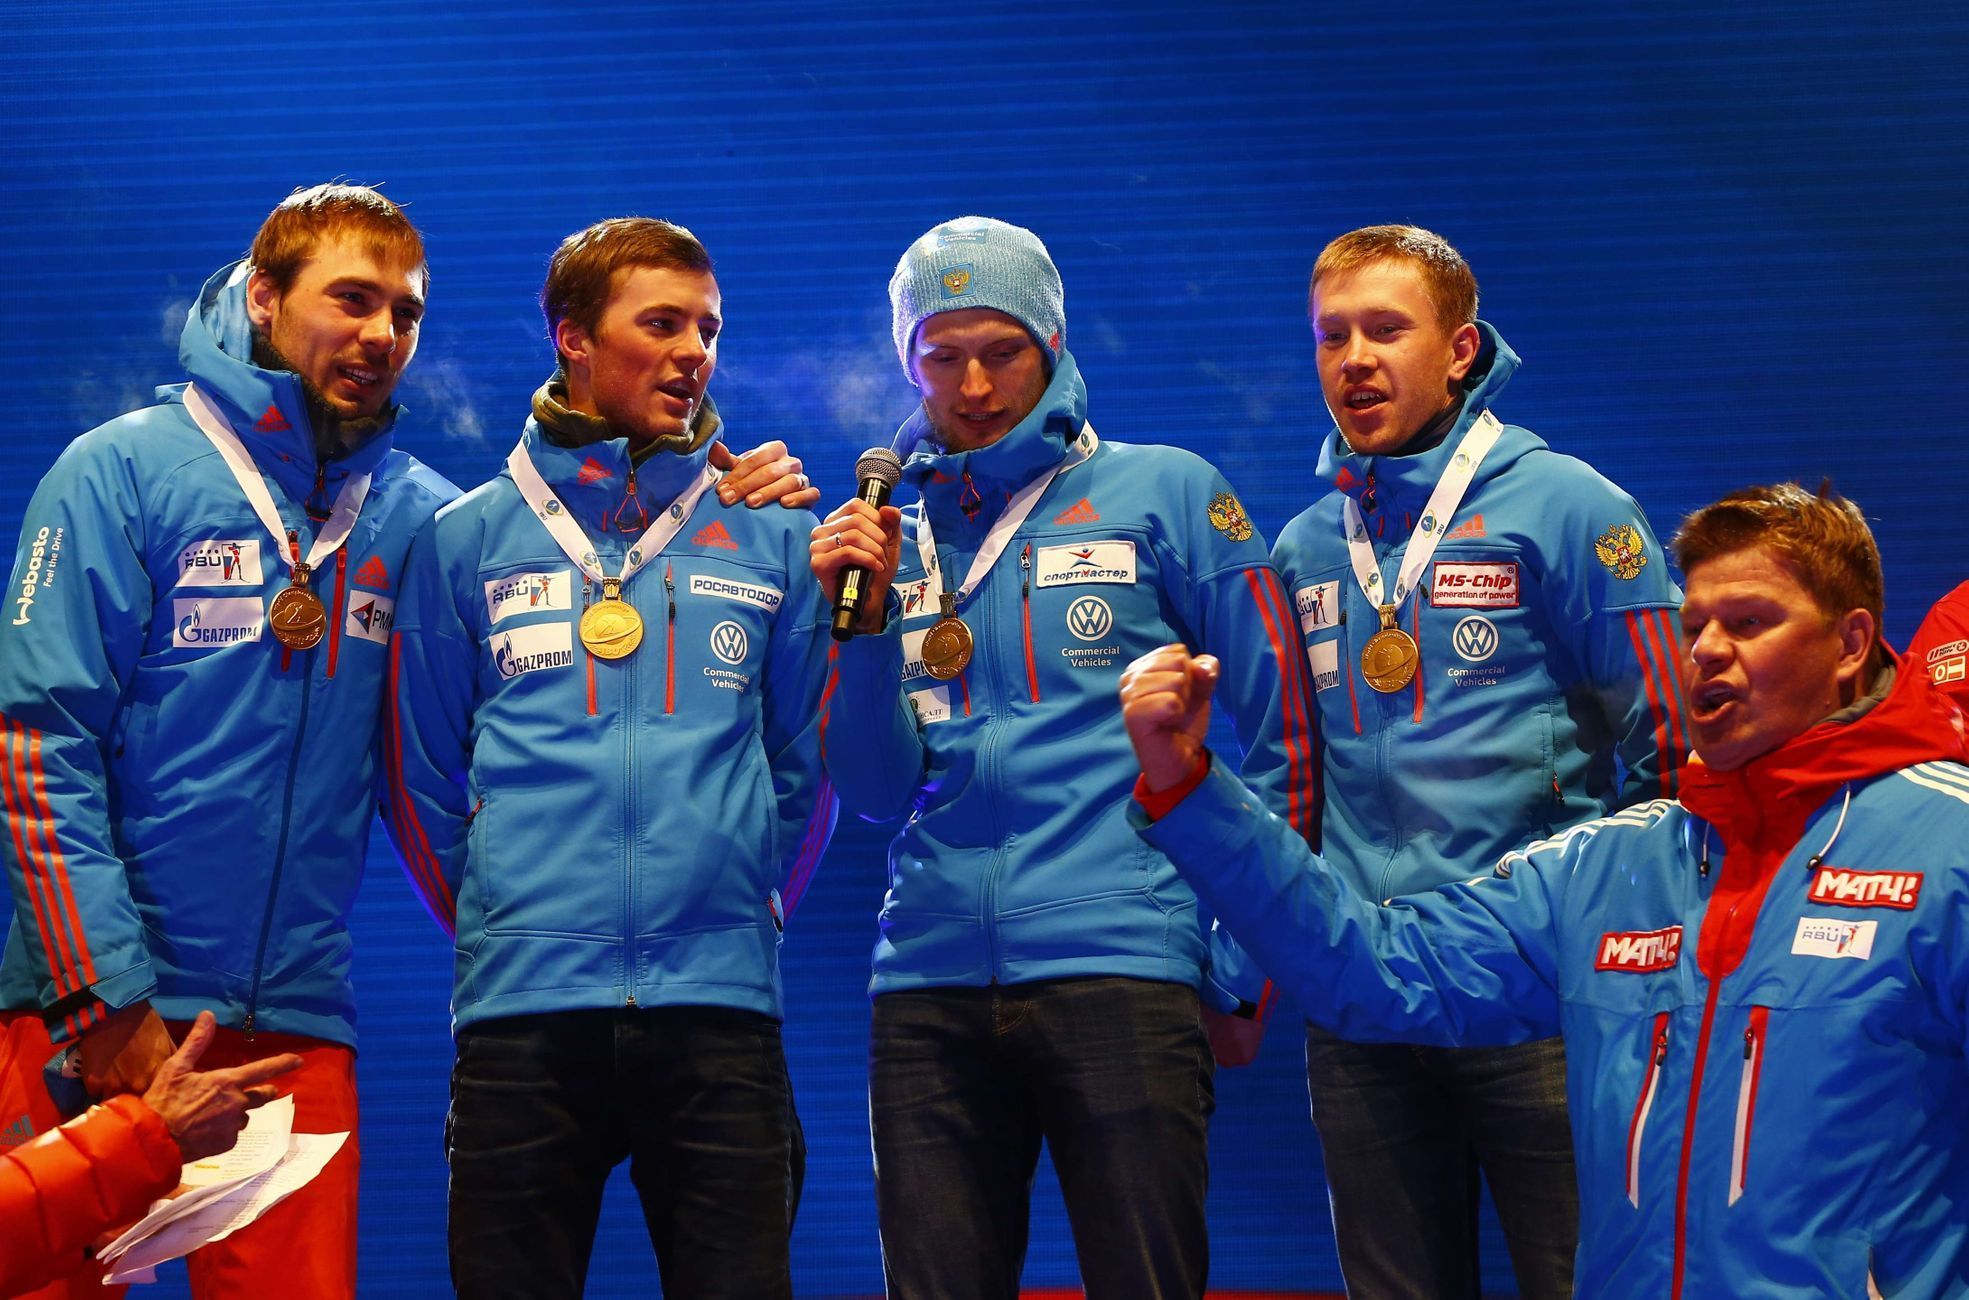 Ruská štafeta na medailovém ceremoniálu na MS 2017 (Volkov, Cvetkov, Babikov, Šipulin)